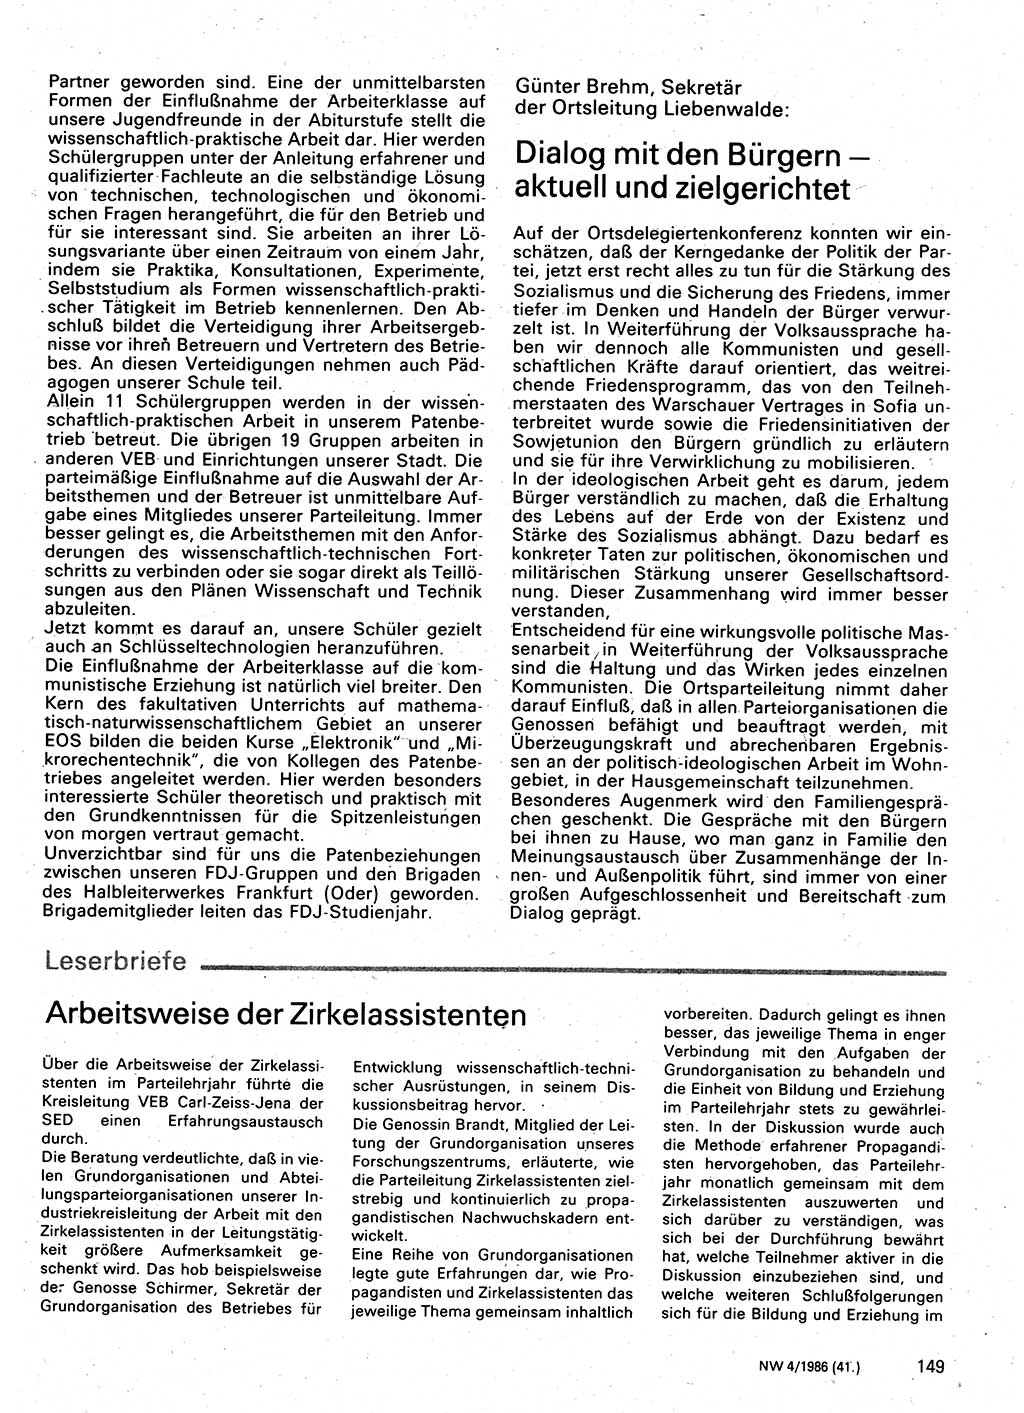 Neuer Weg (NW), Organ des Zentralkomitees (ZK) der SED (Sozialistische Einheitspartei Deutschlands) für Fragen des Parteilebens, 41. Jahrgang [Deutsche Demokratische Republik (DDR)] 1986, Seite 149 (NW ZK SED DDR 1986, S. 149)